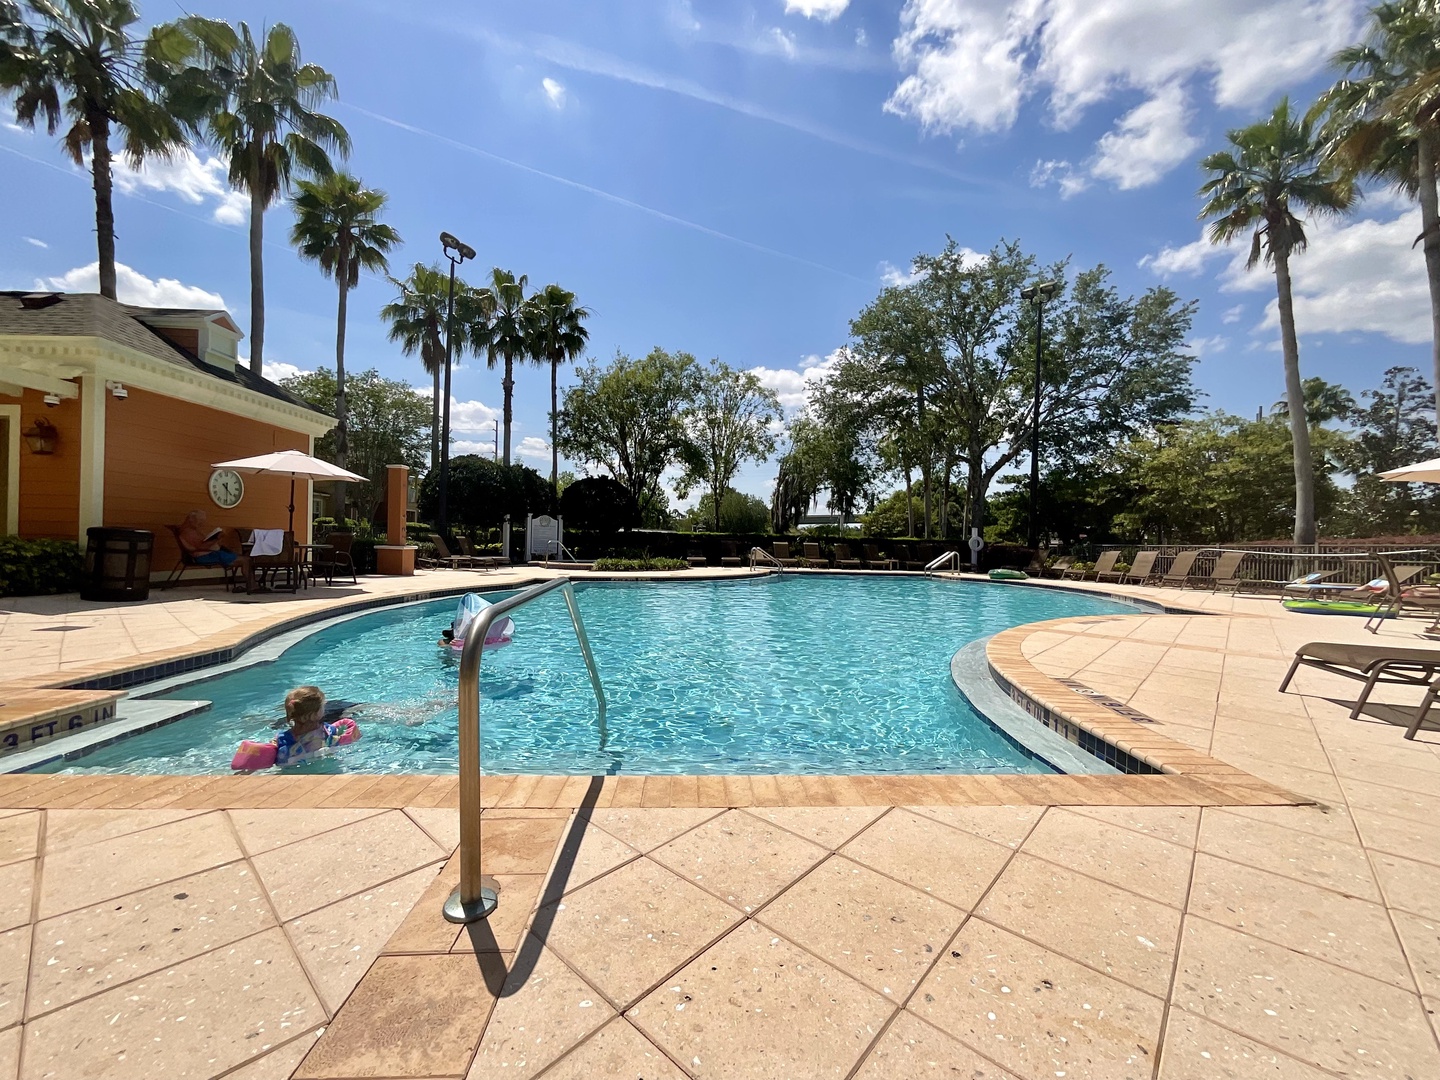 Reunion Resort - heated pools, hot tub and kids splash pools